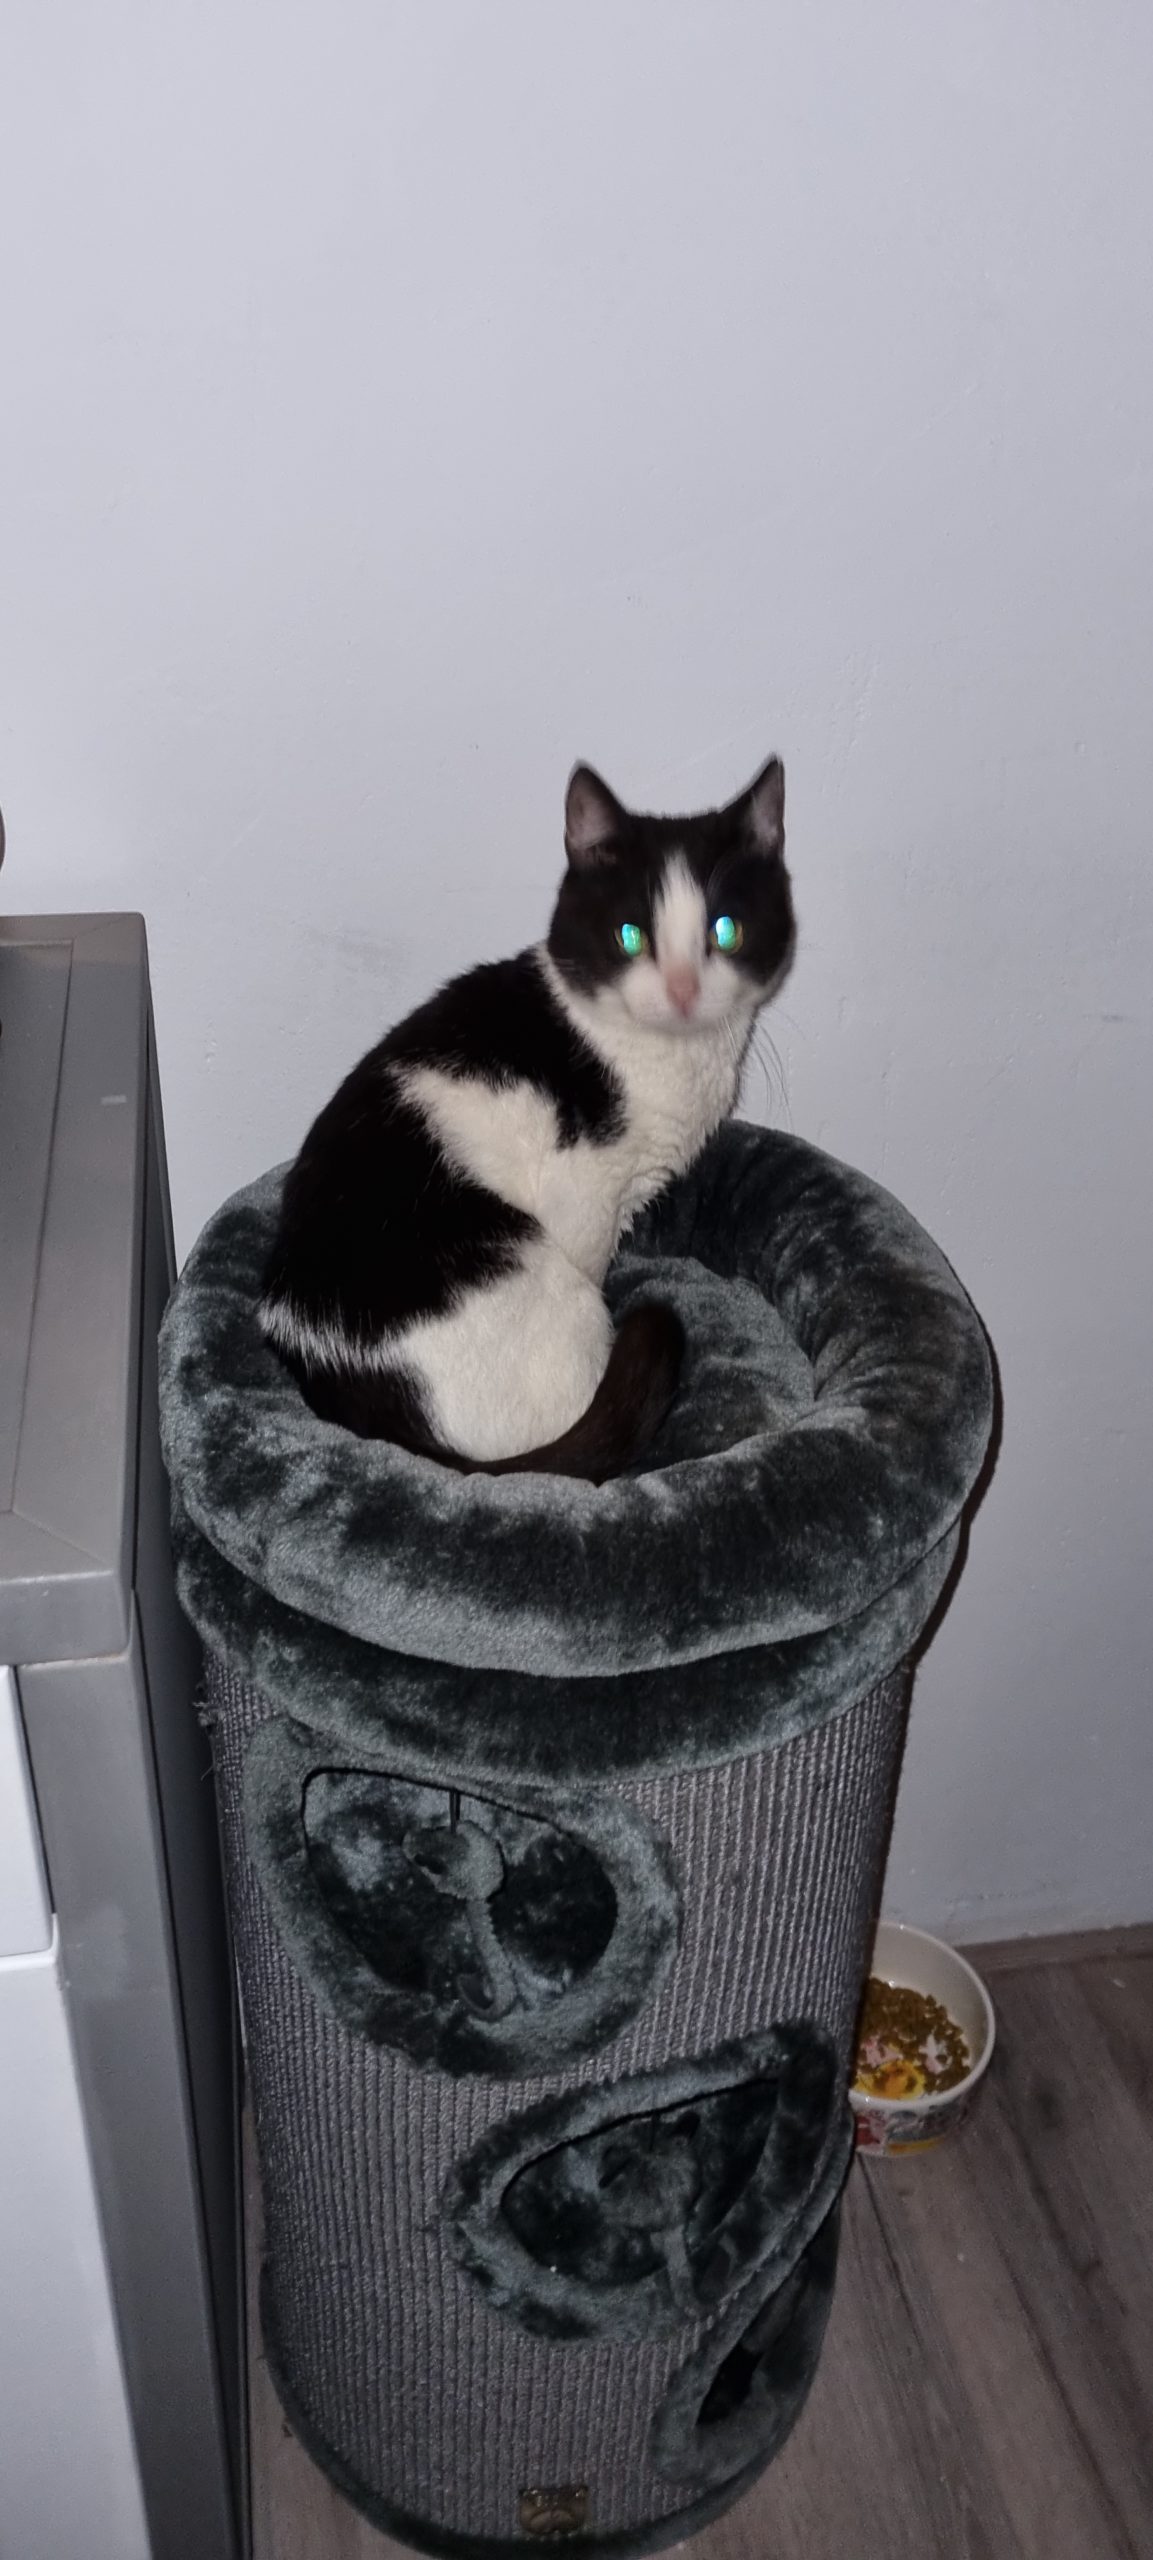 Zwart-witte kat Joost, geadopteerd vanuit 't Julialaantje in Rijswijk, zit op een mandje in zijn nieuwe thuis